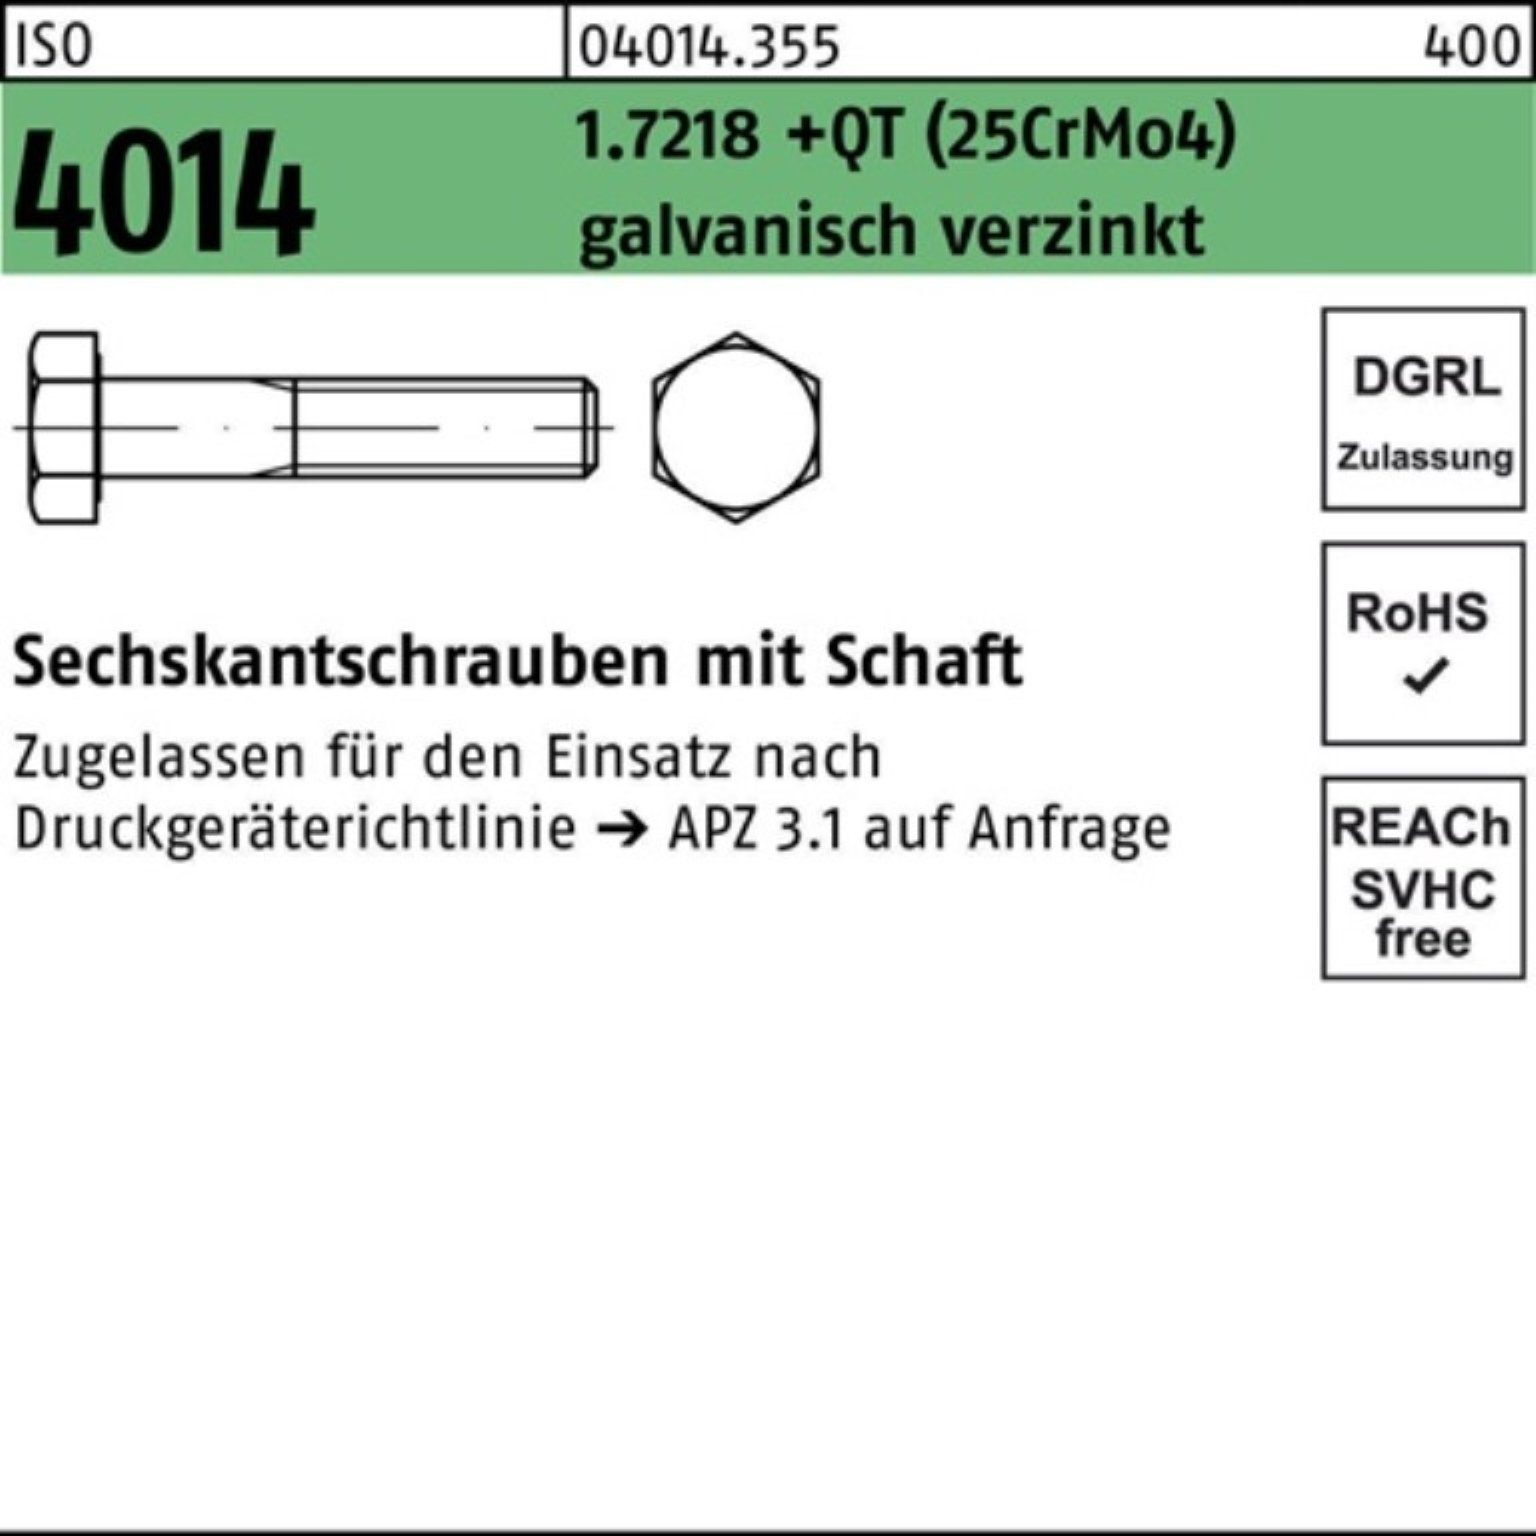 (25CrM 100er Schaft Sechskantschraube Bufab Sechskantschraube +QT 1.7218 4014 Pack ISO M27x230